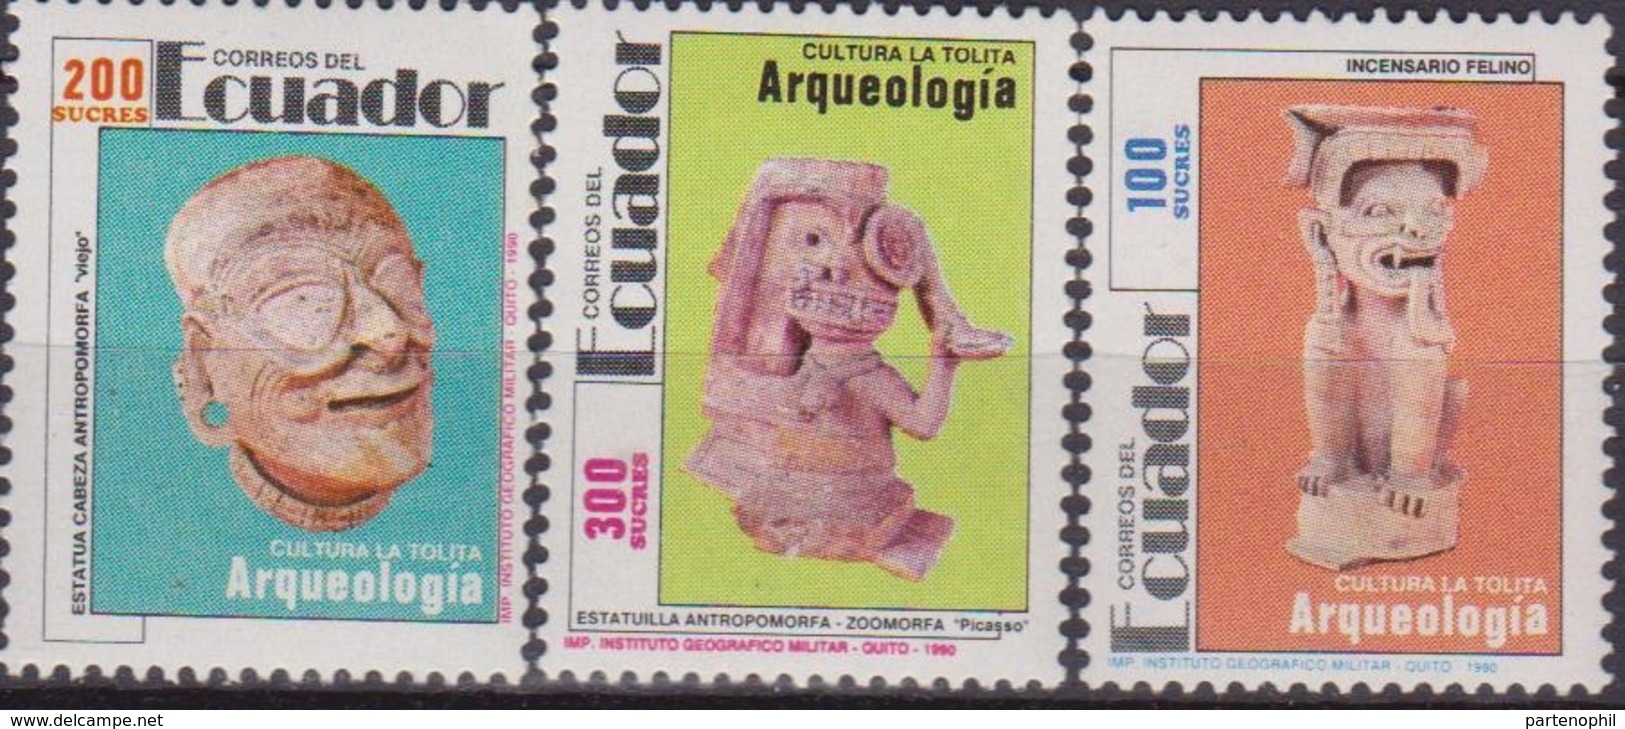 Ecuador Archeologia Archeology Arqueologia Set MNH - Arqueología